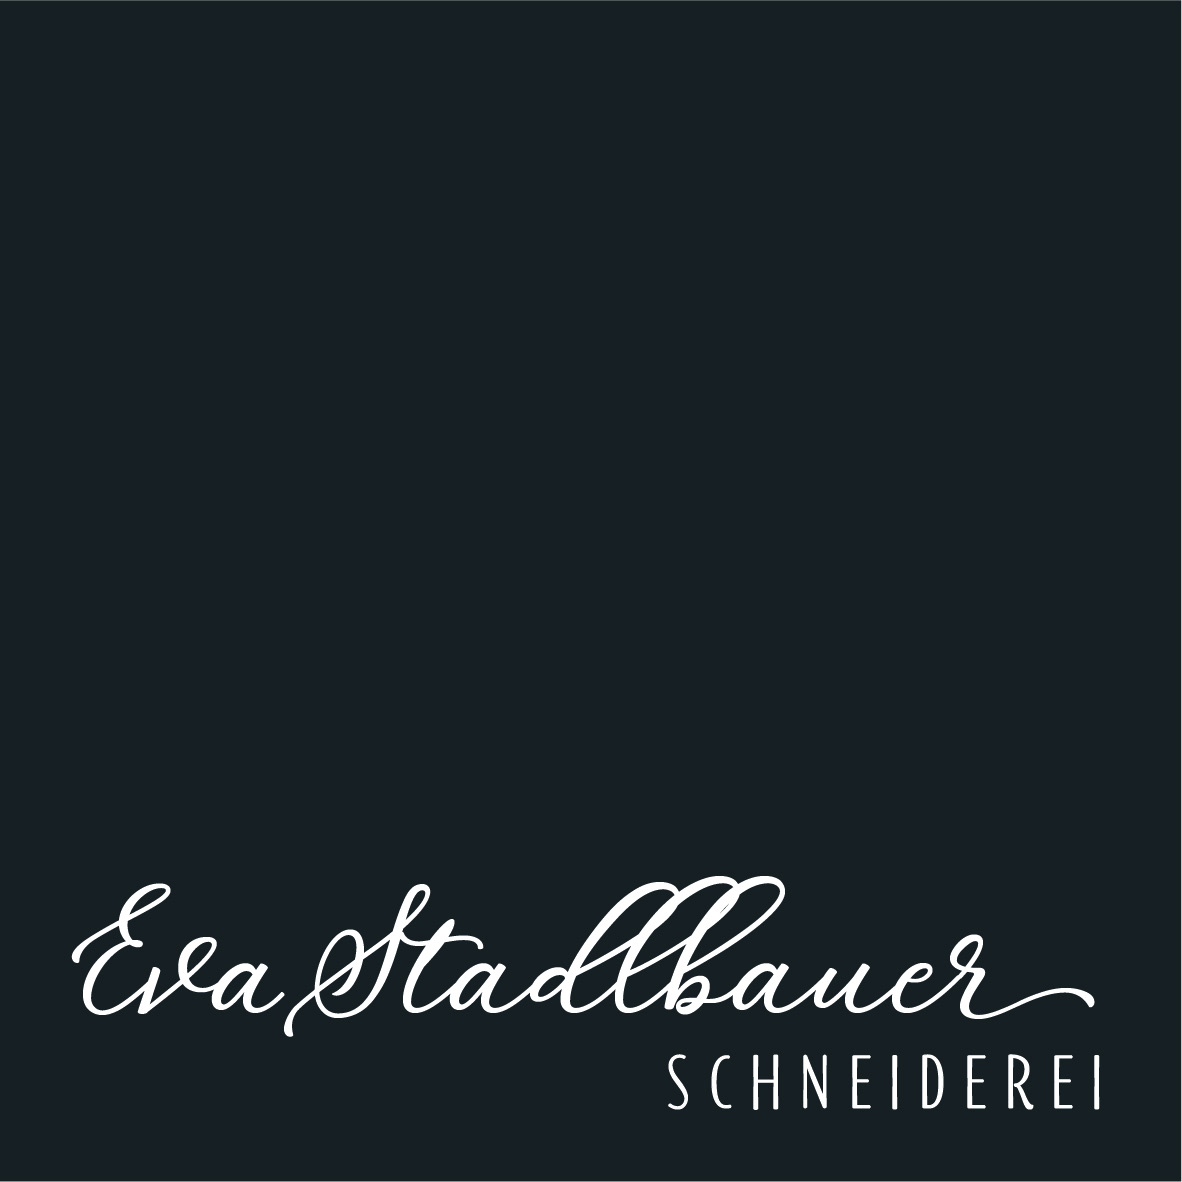 Eva Stadlbauer Schneiderei